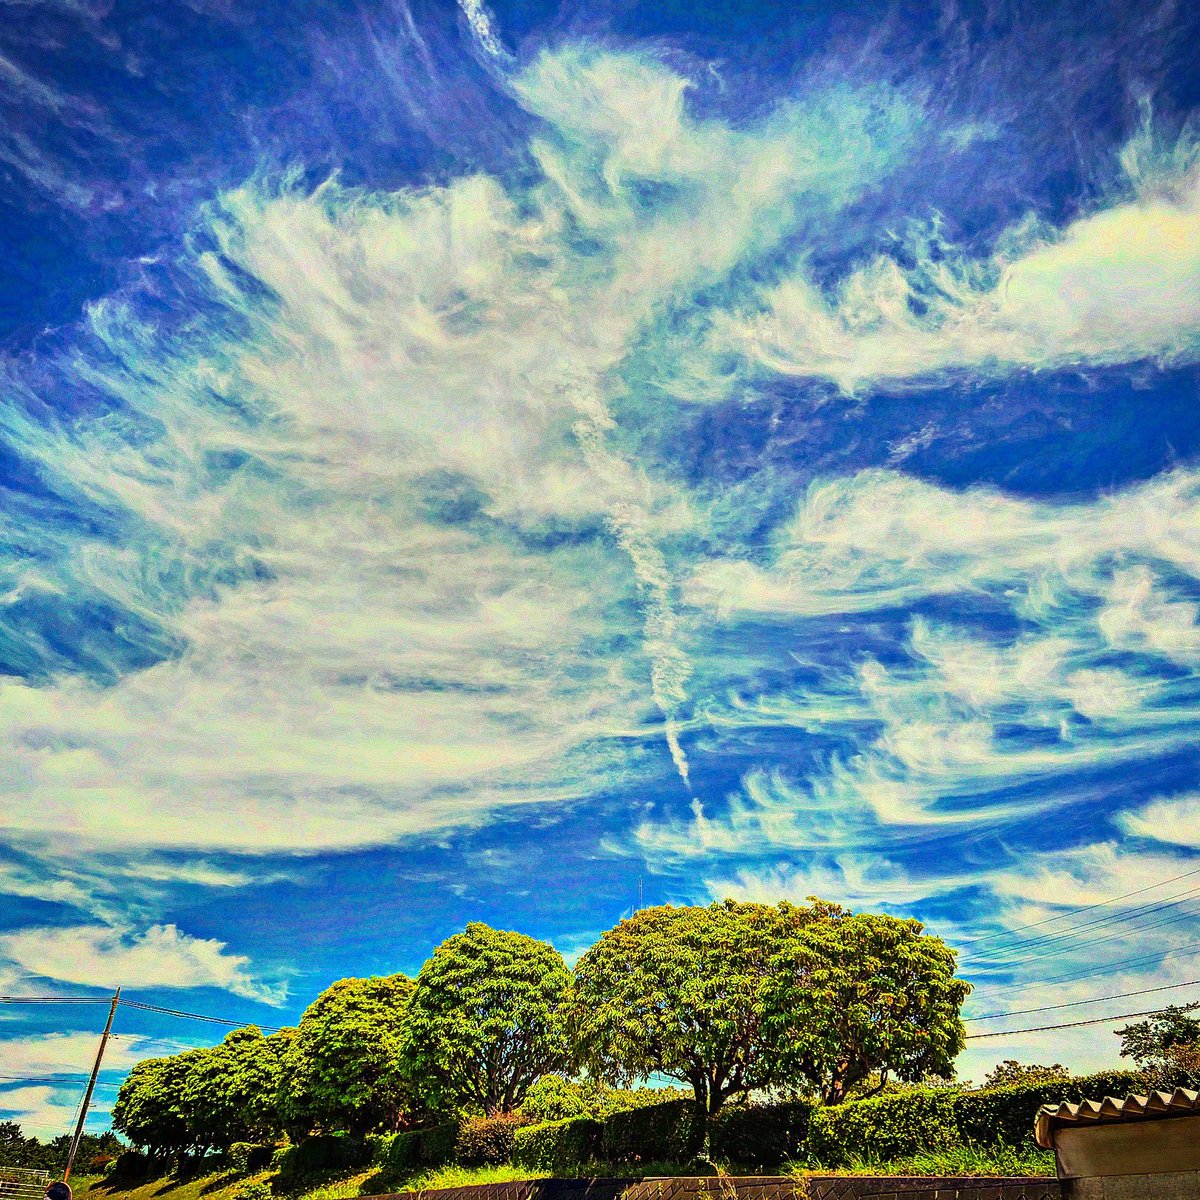 いつかの空☀️☁️🌳

#空
#青空
#雲
#緑
#風景
#風景写真